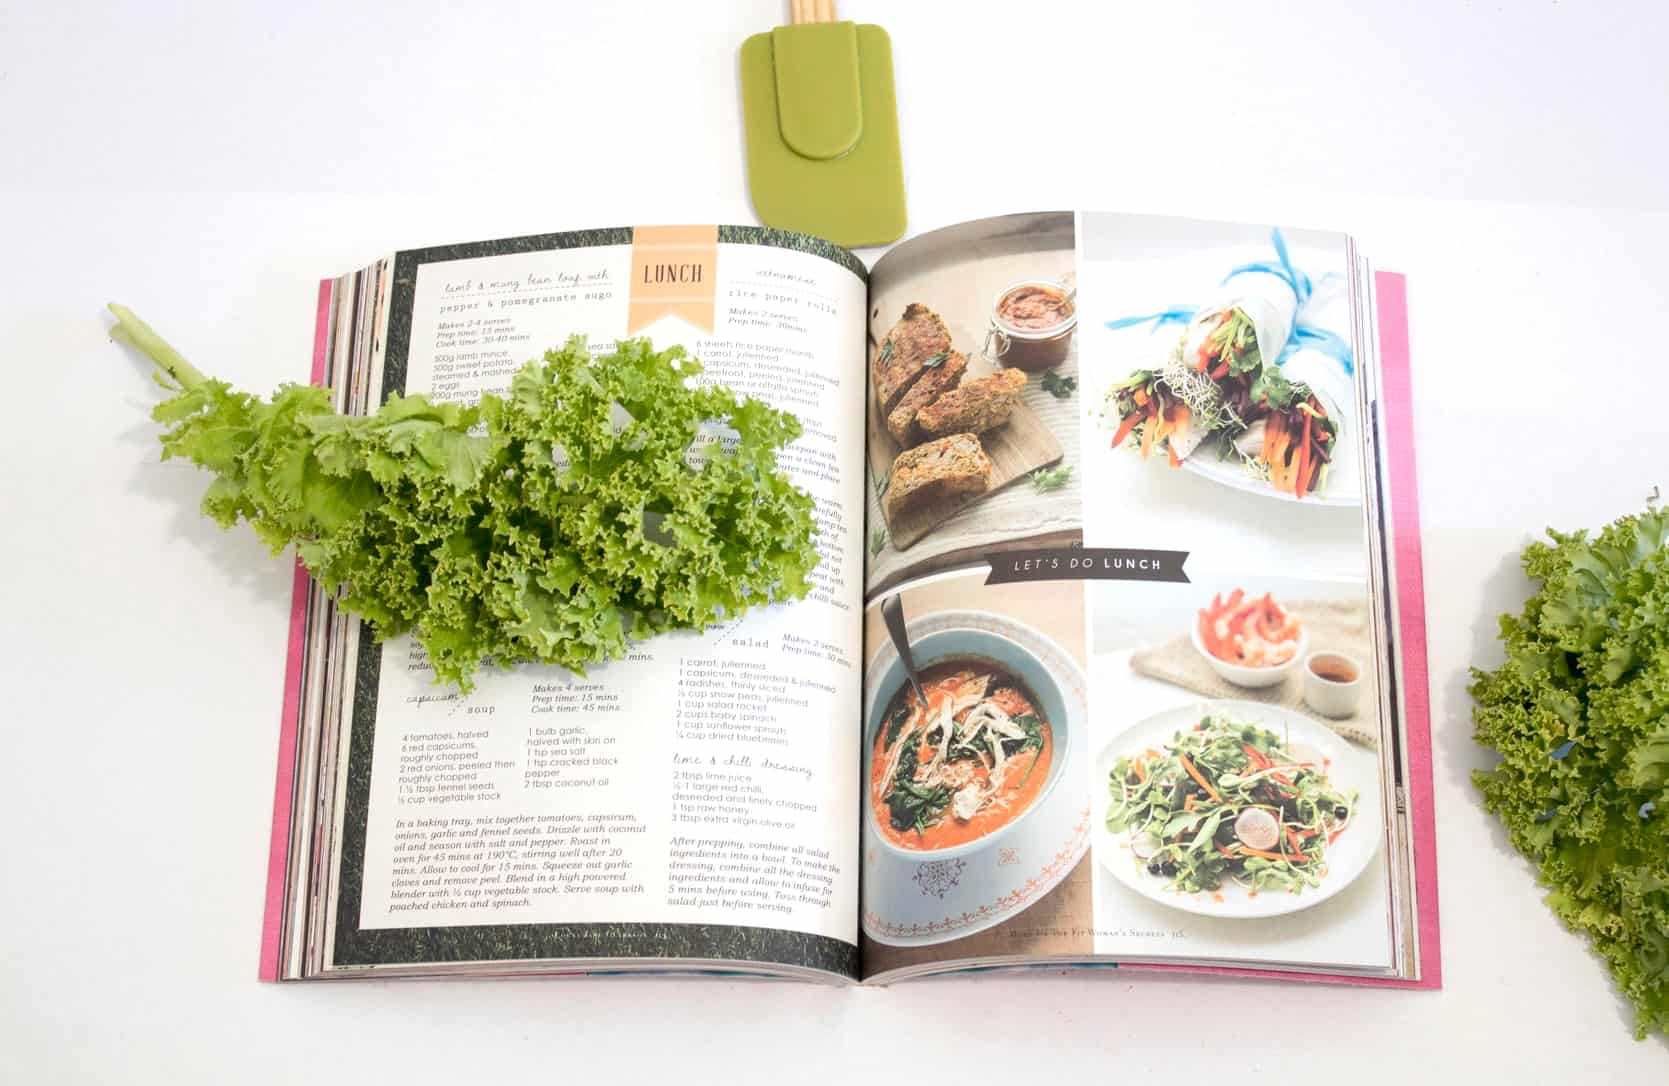 ТОП-5: лучшие кулинарные книги